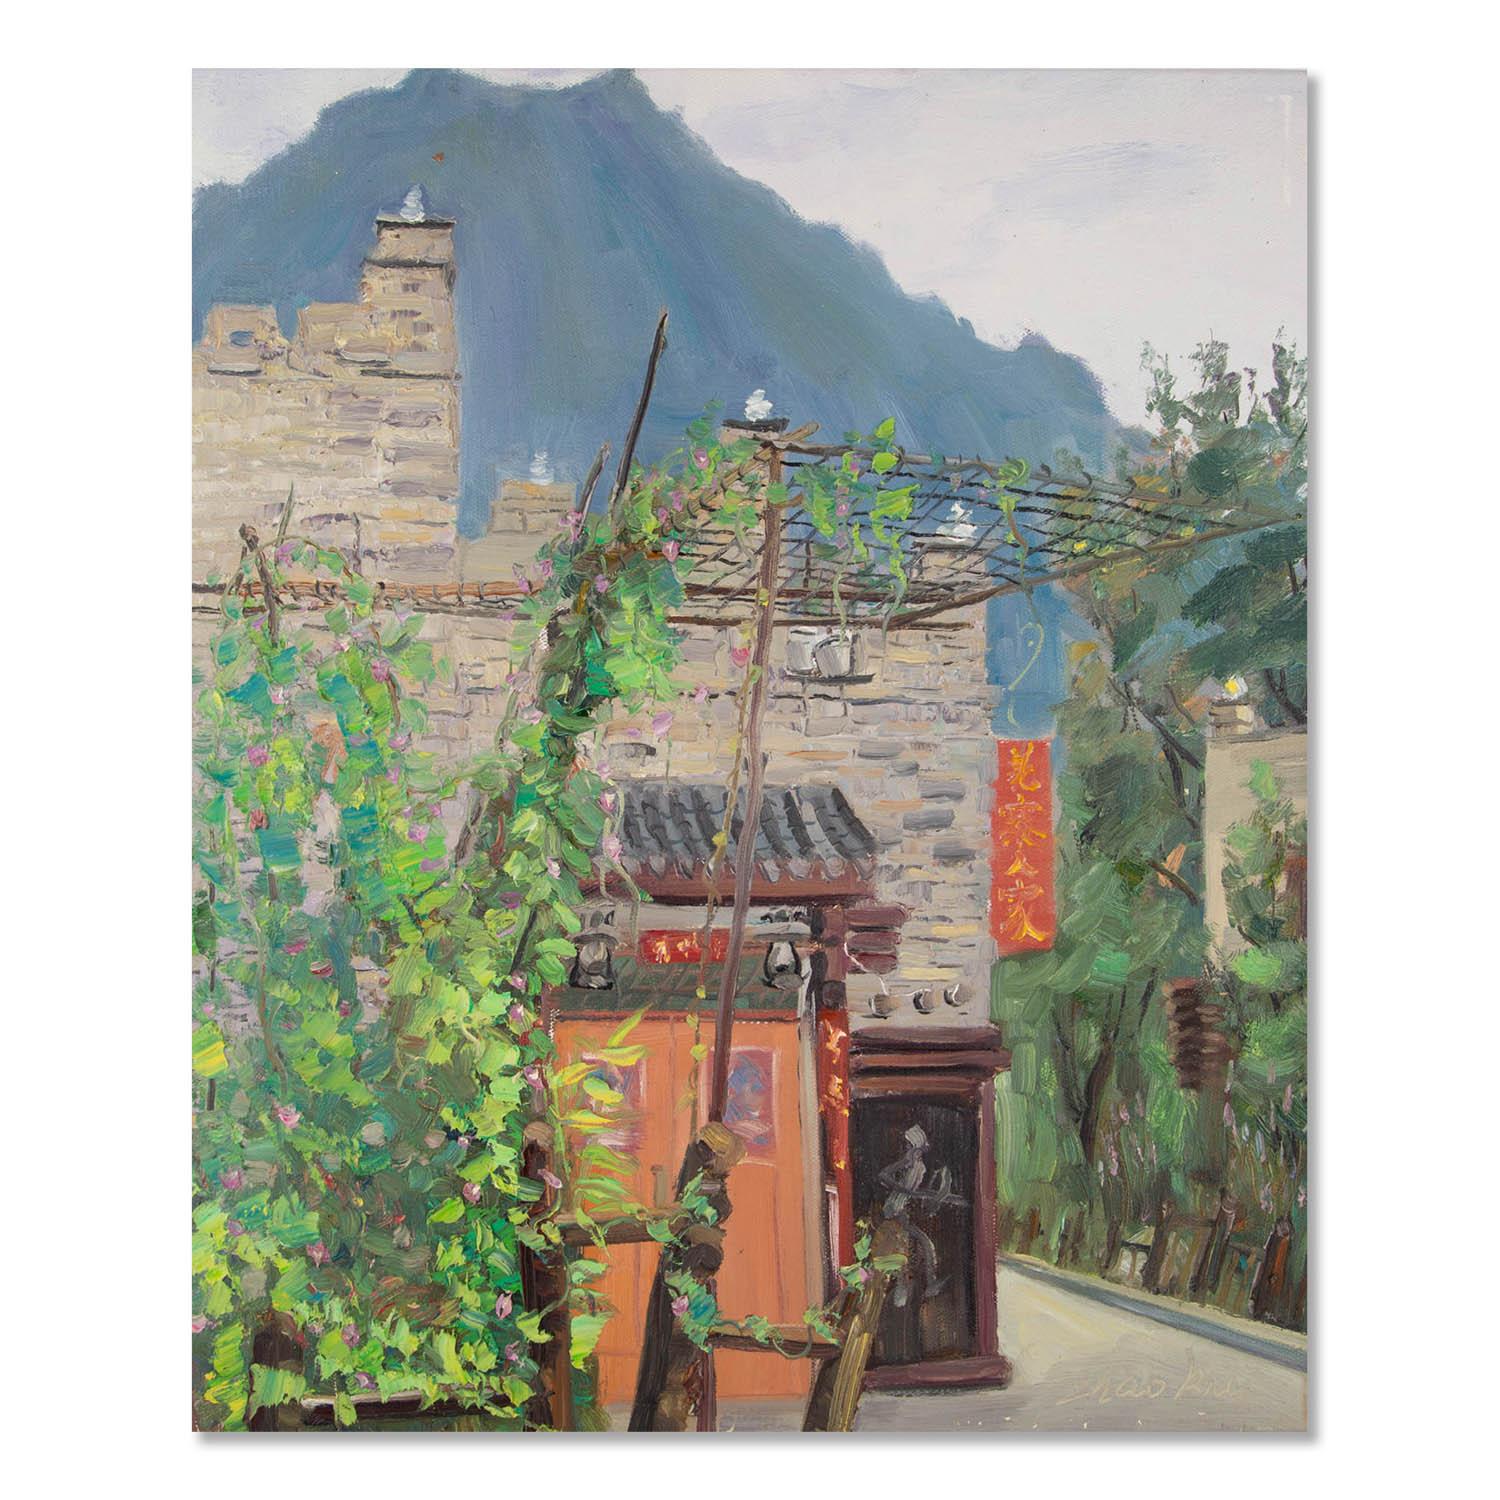 Cette peinture représente une scène de campagne sereine en Chine. Le Duilian rouge sur la porte au premier plan attire l'attention du spectateur et ajoute une touche de vivacité à ce cadre autrement tranquille. L'atmosphère générale du tableau est